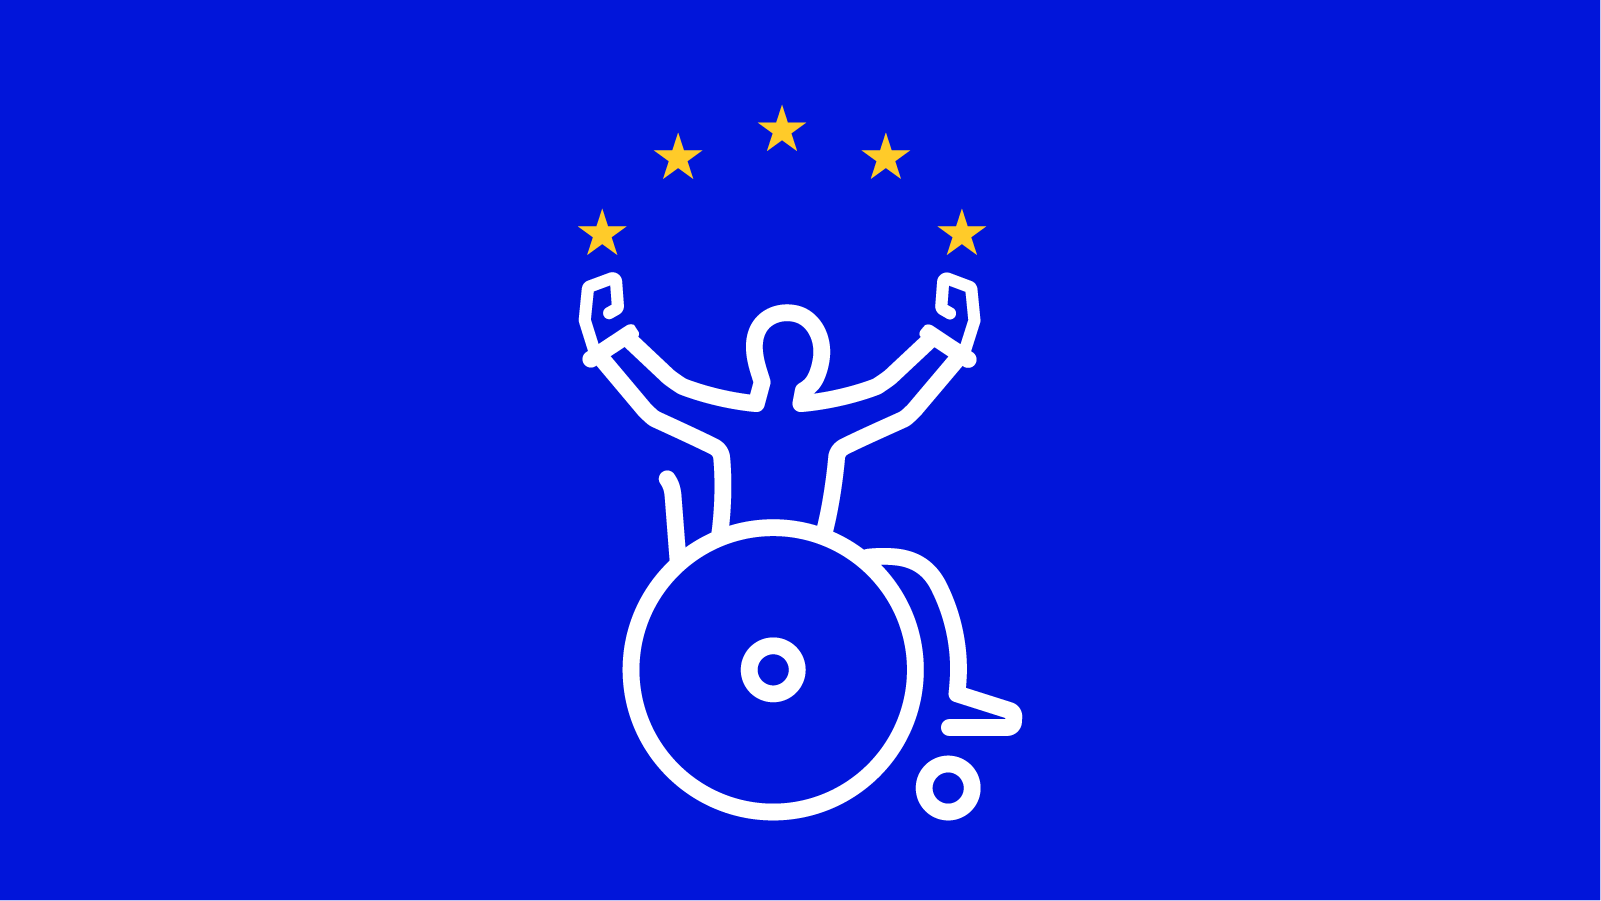 Uloba-logo med stjerner.